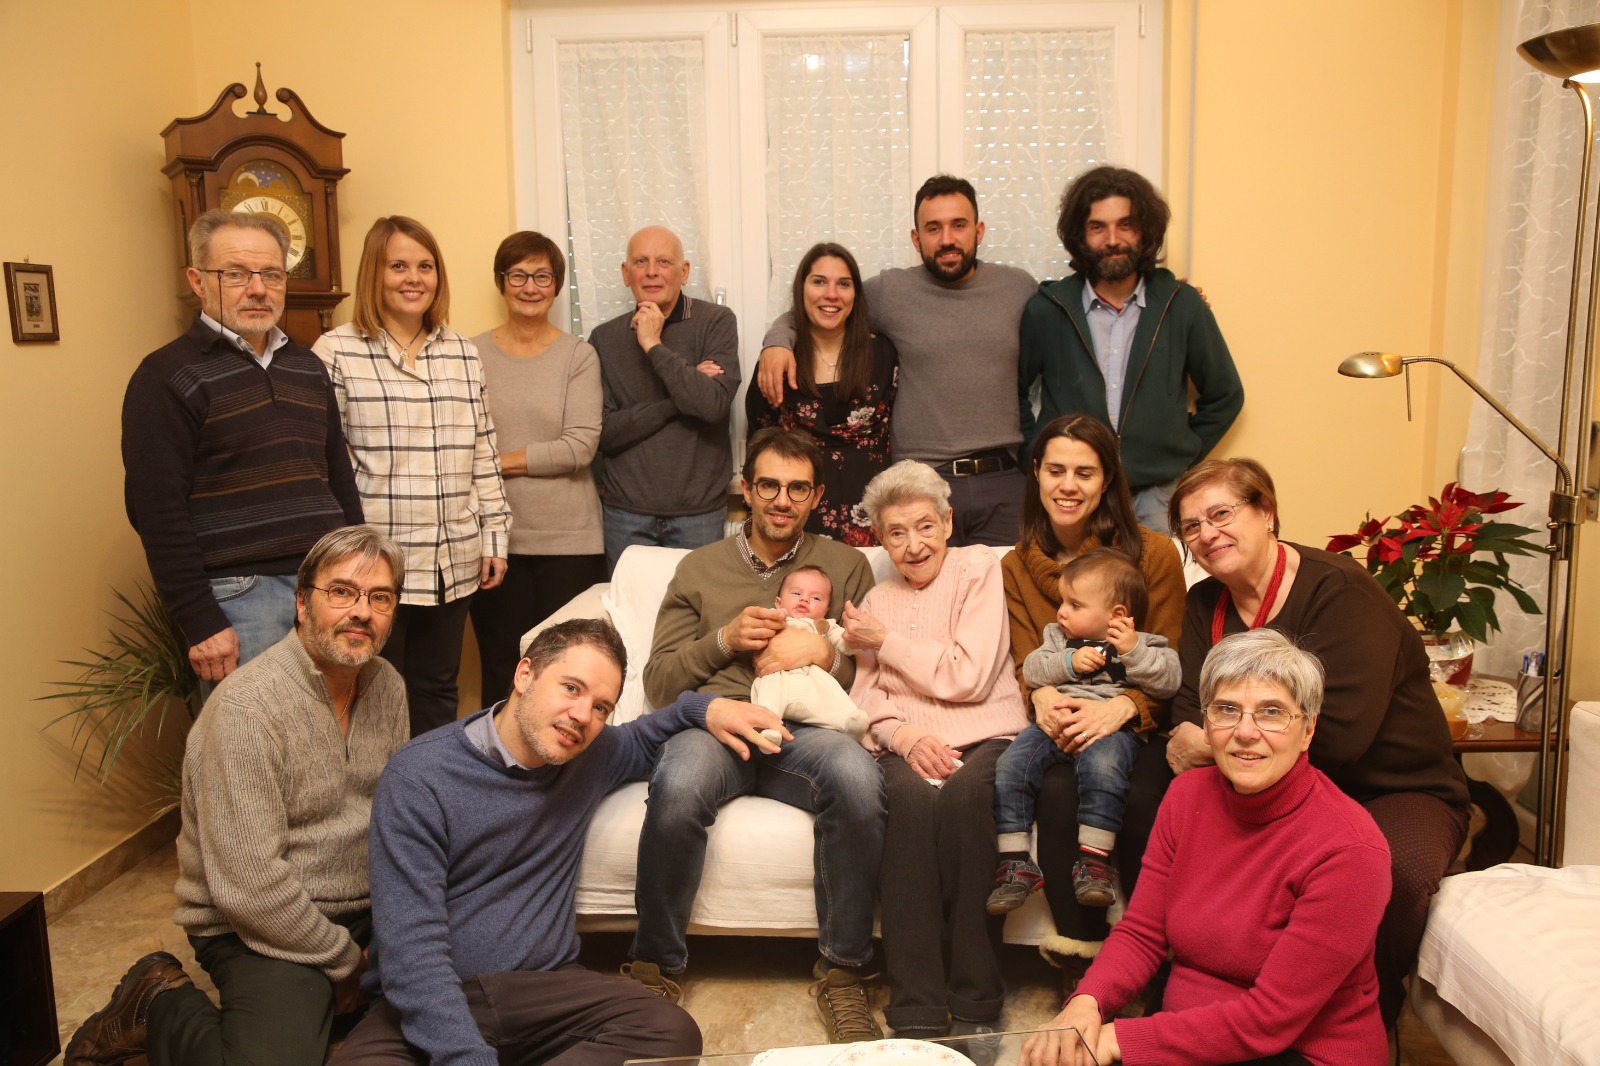 Adelina Perovani, nonna Lina, nativa di Cisano Bergamasco e residente a Calolziocorte, ha festeggiato i 100 anni